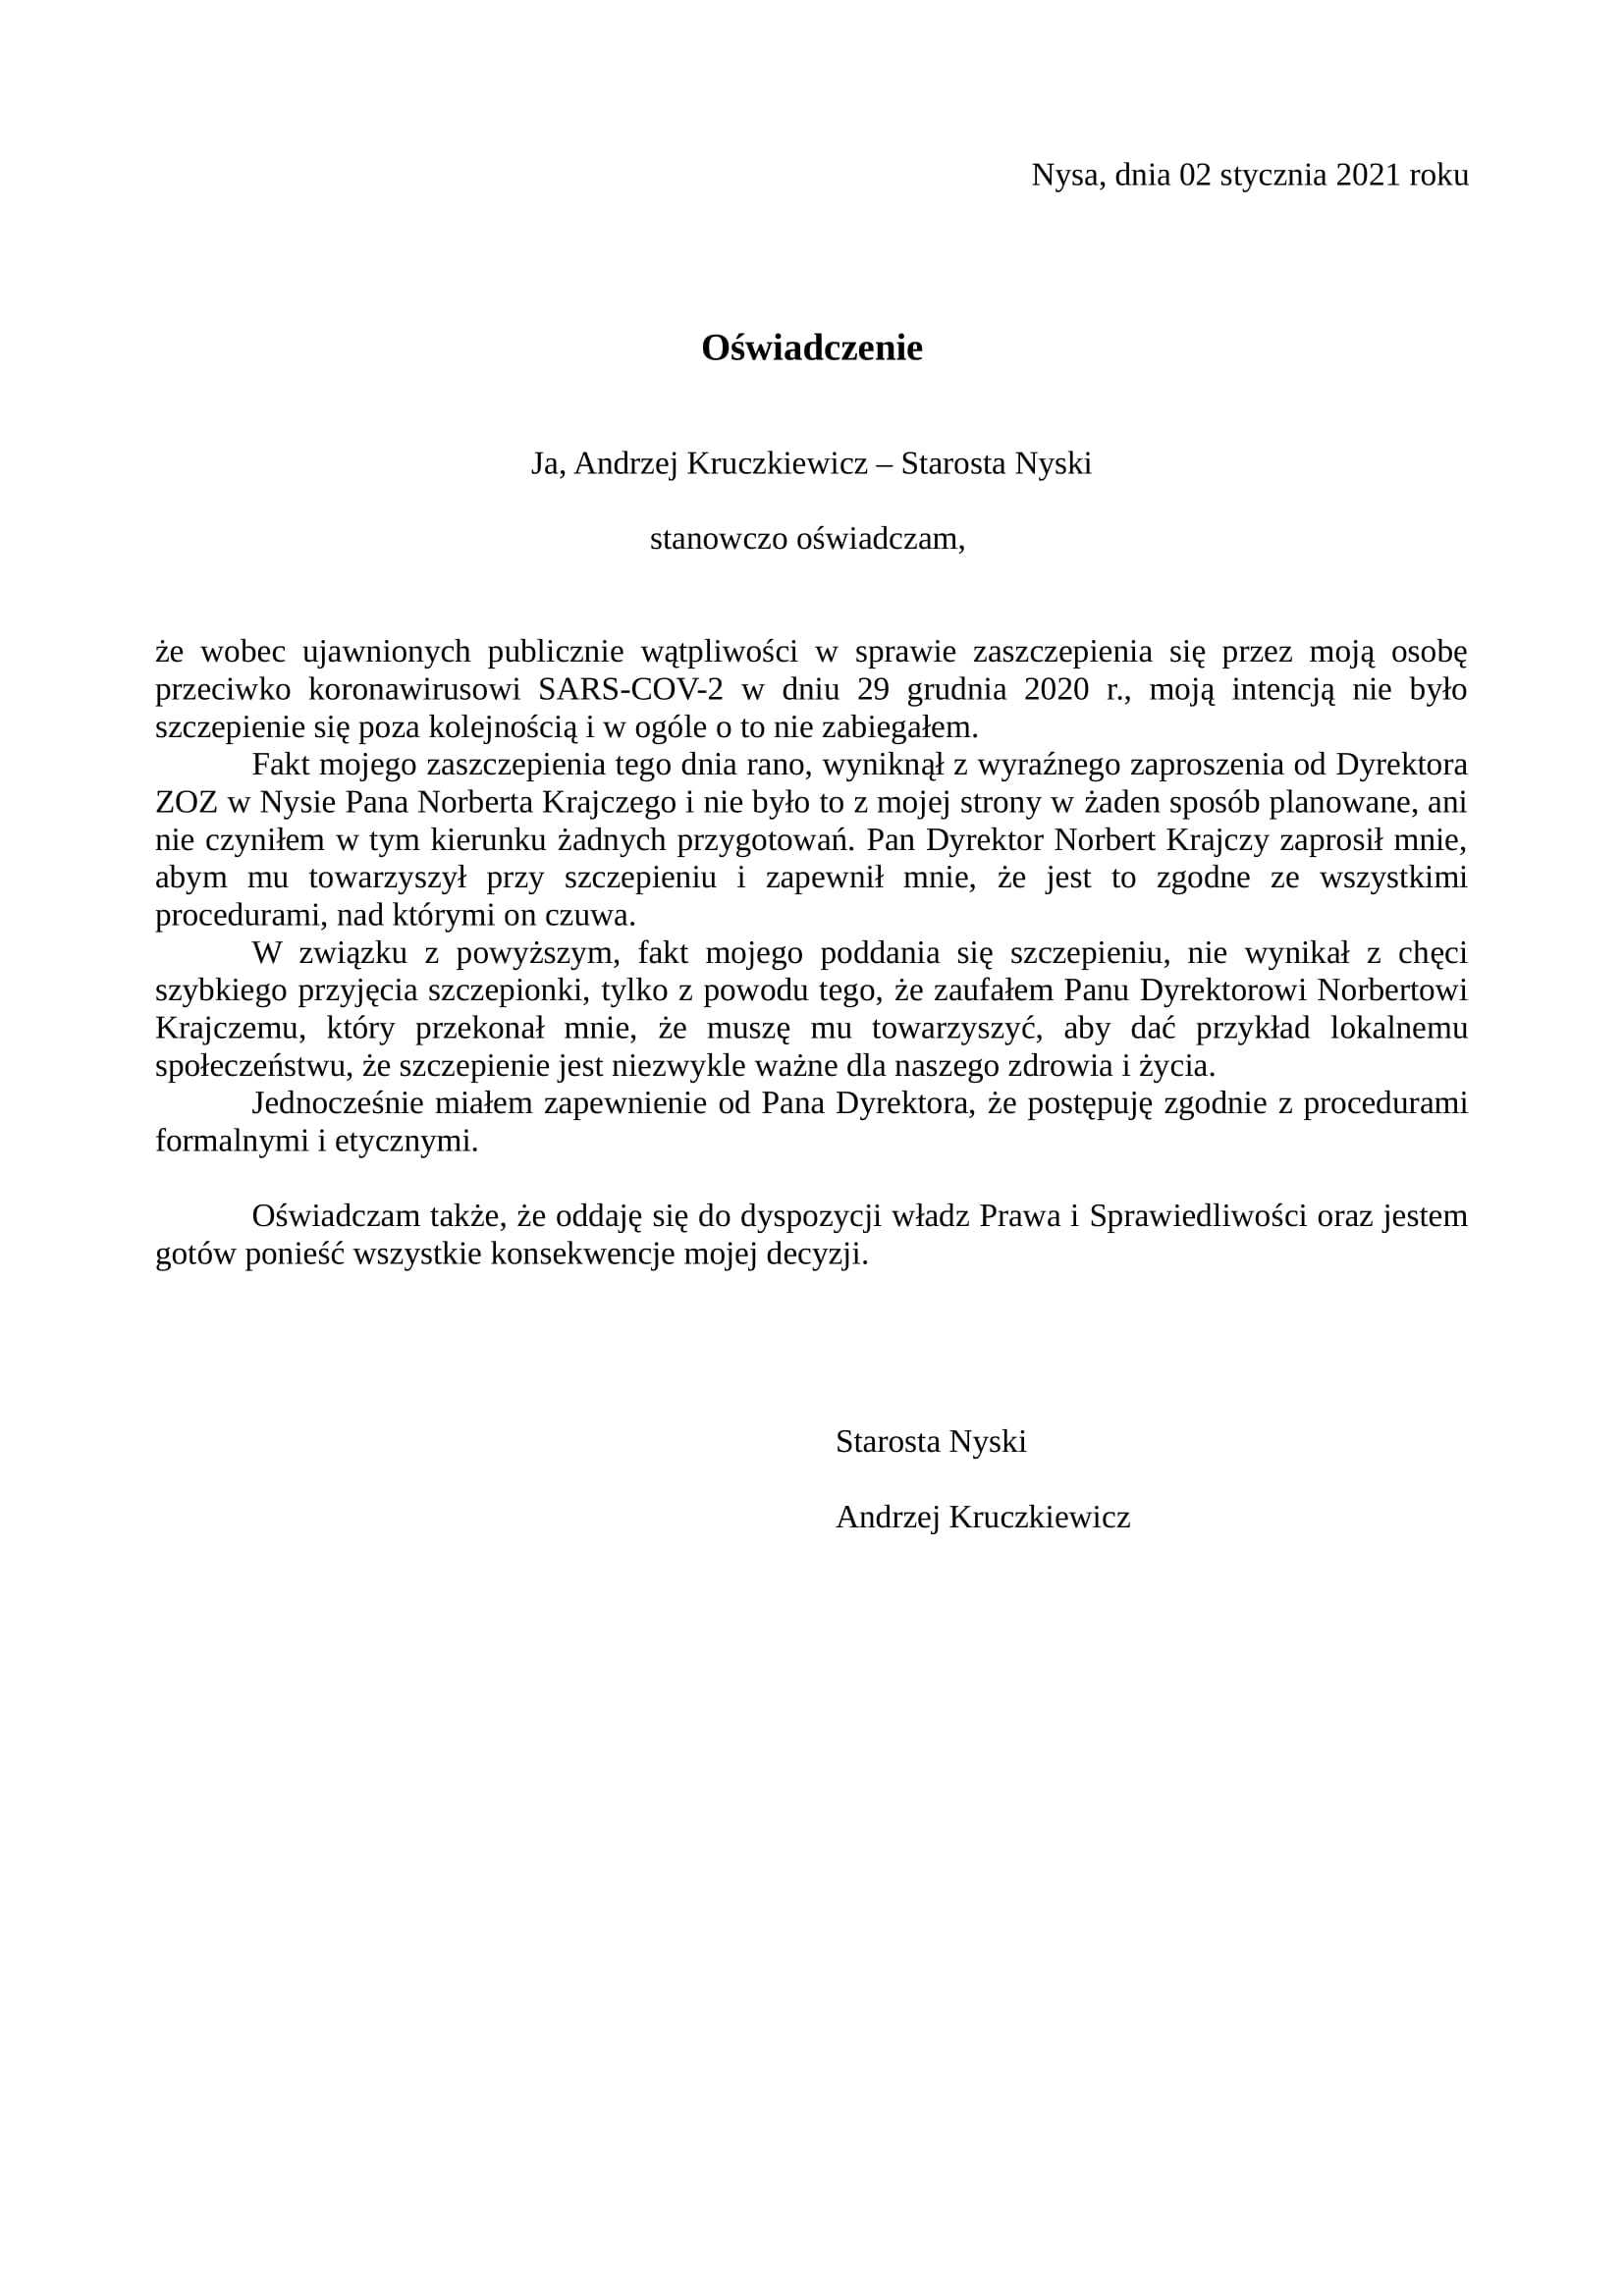 Oświadczenie starosty nyskiego Andrzeja Kruczkiewicza